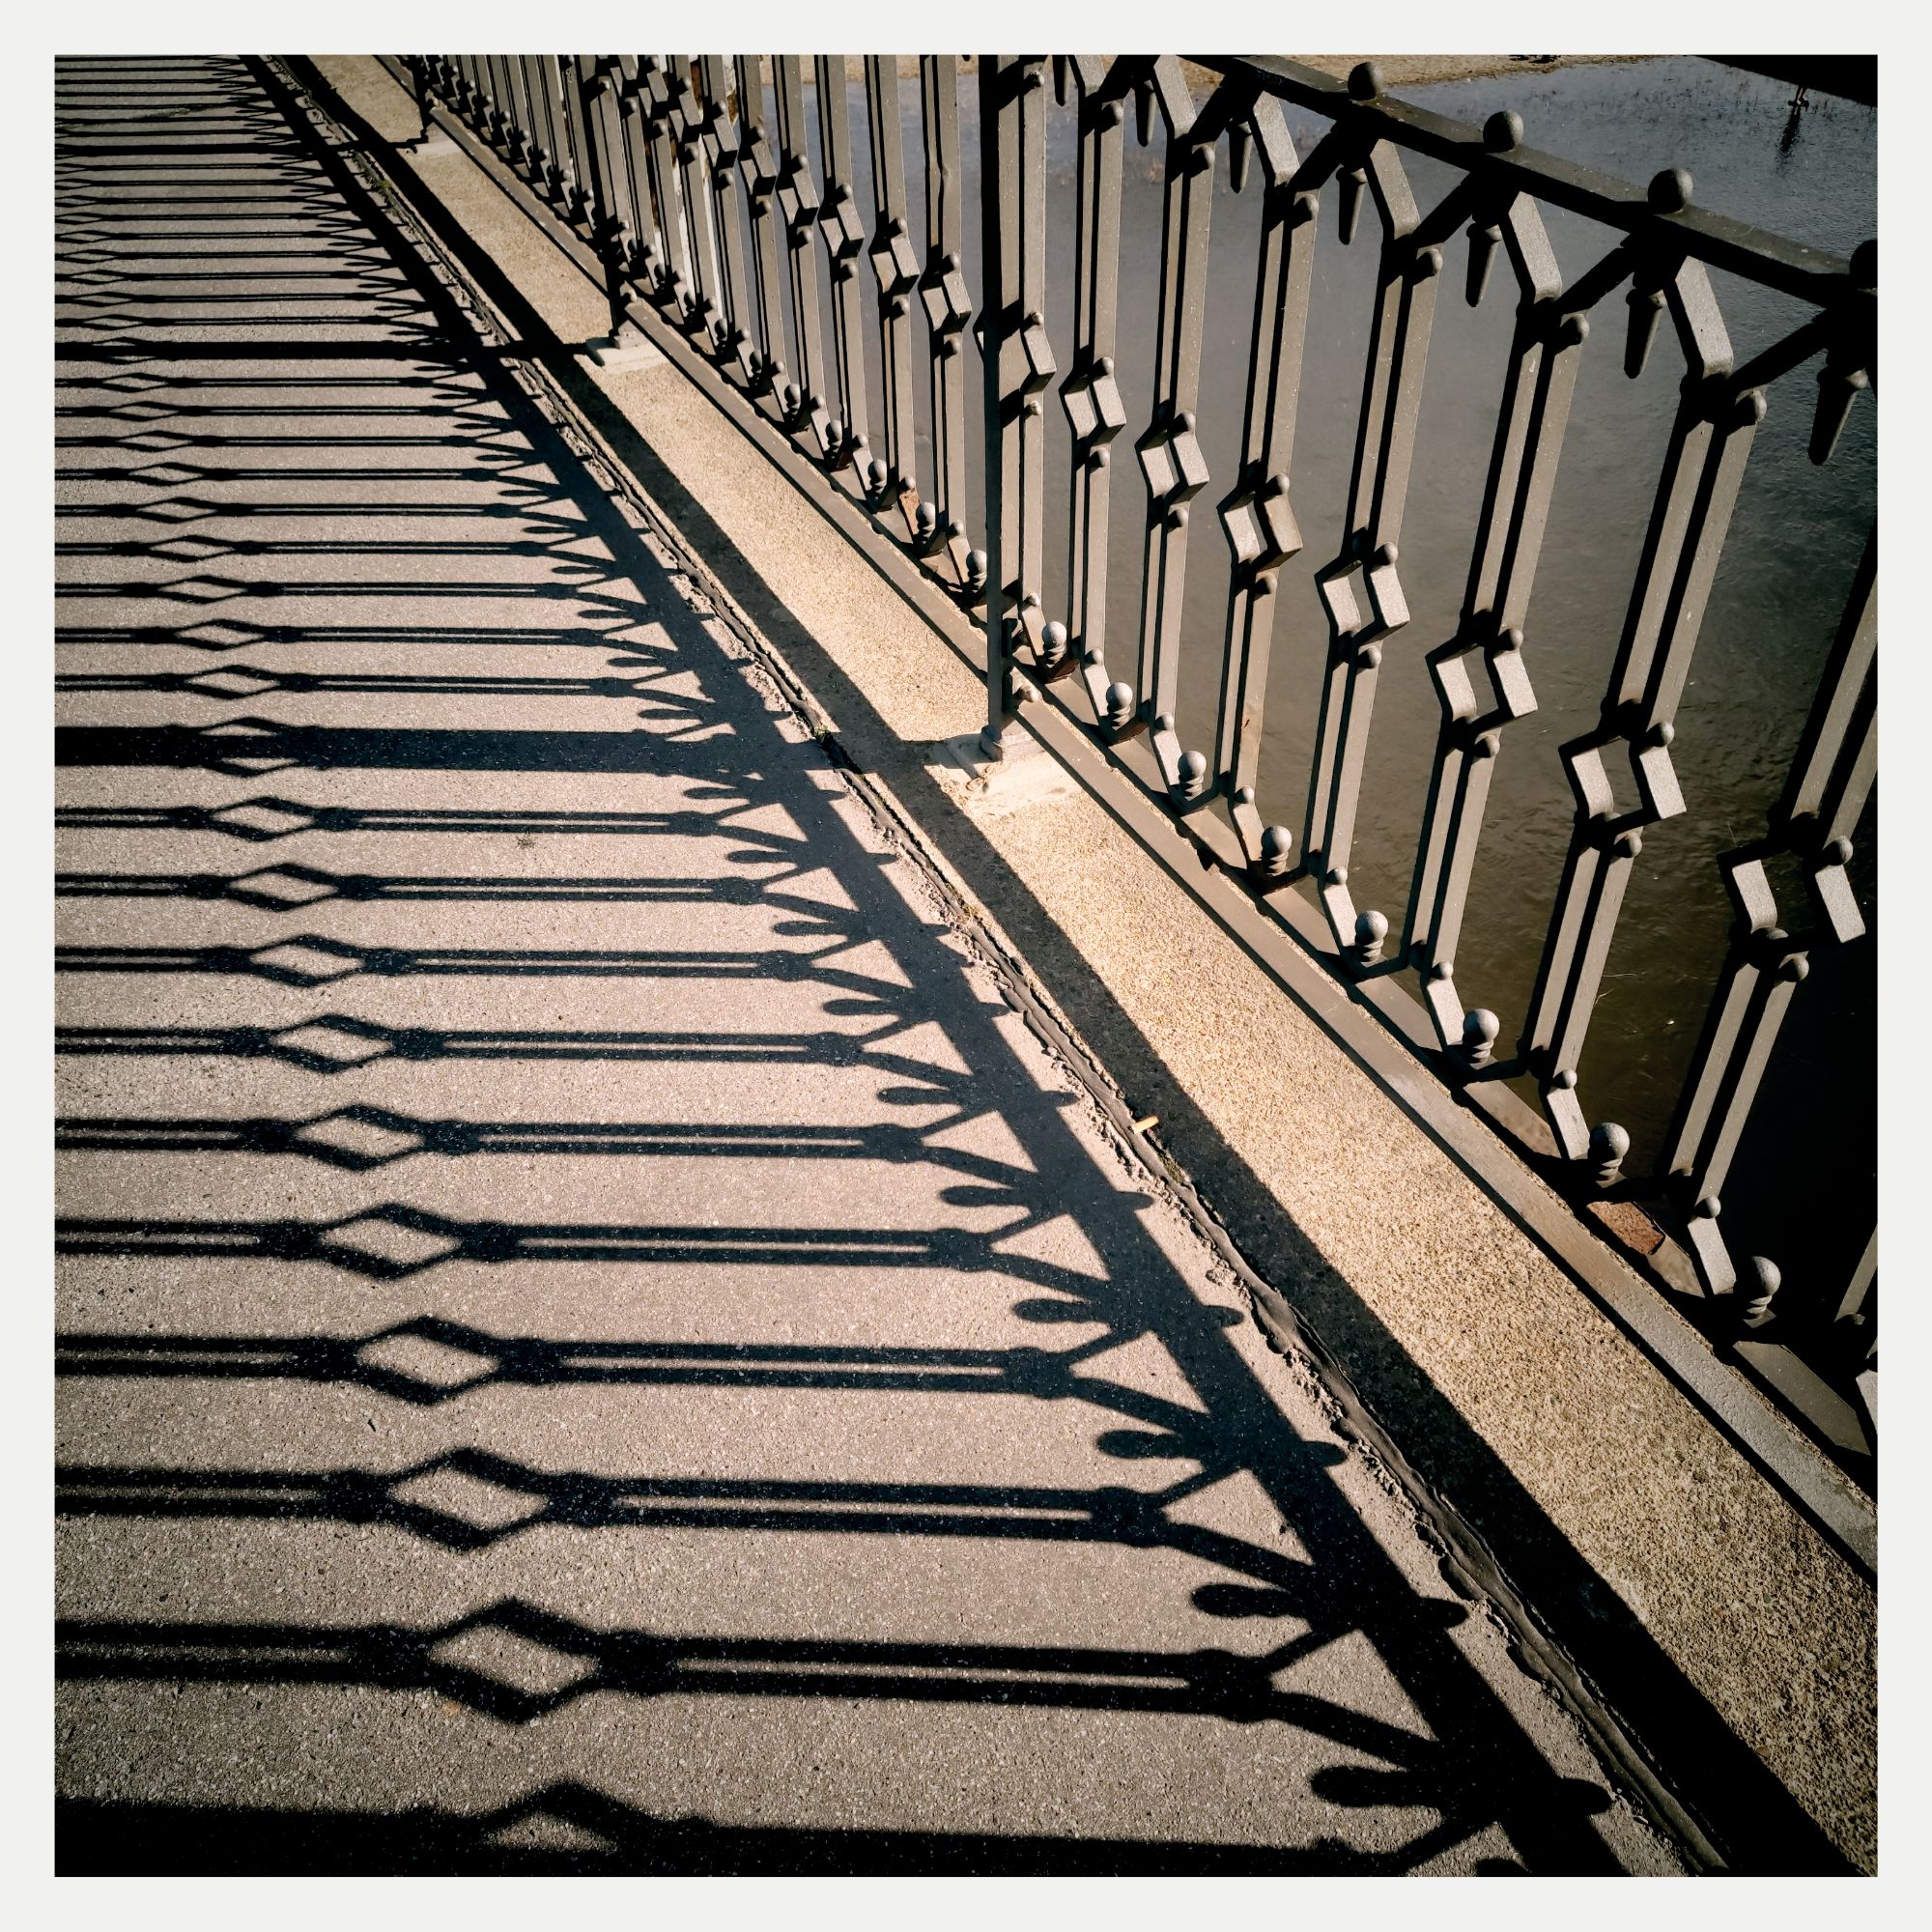 Shadow of a metal railing on a sidewalk.